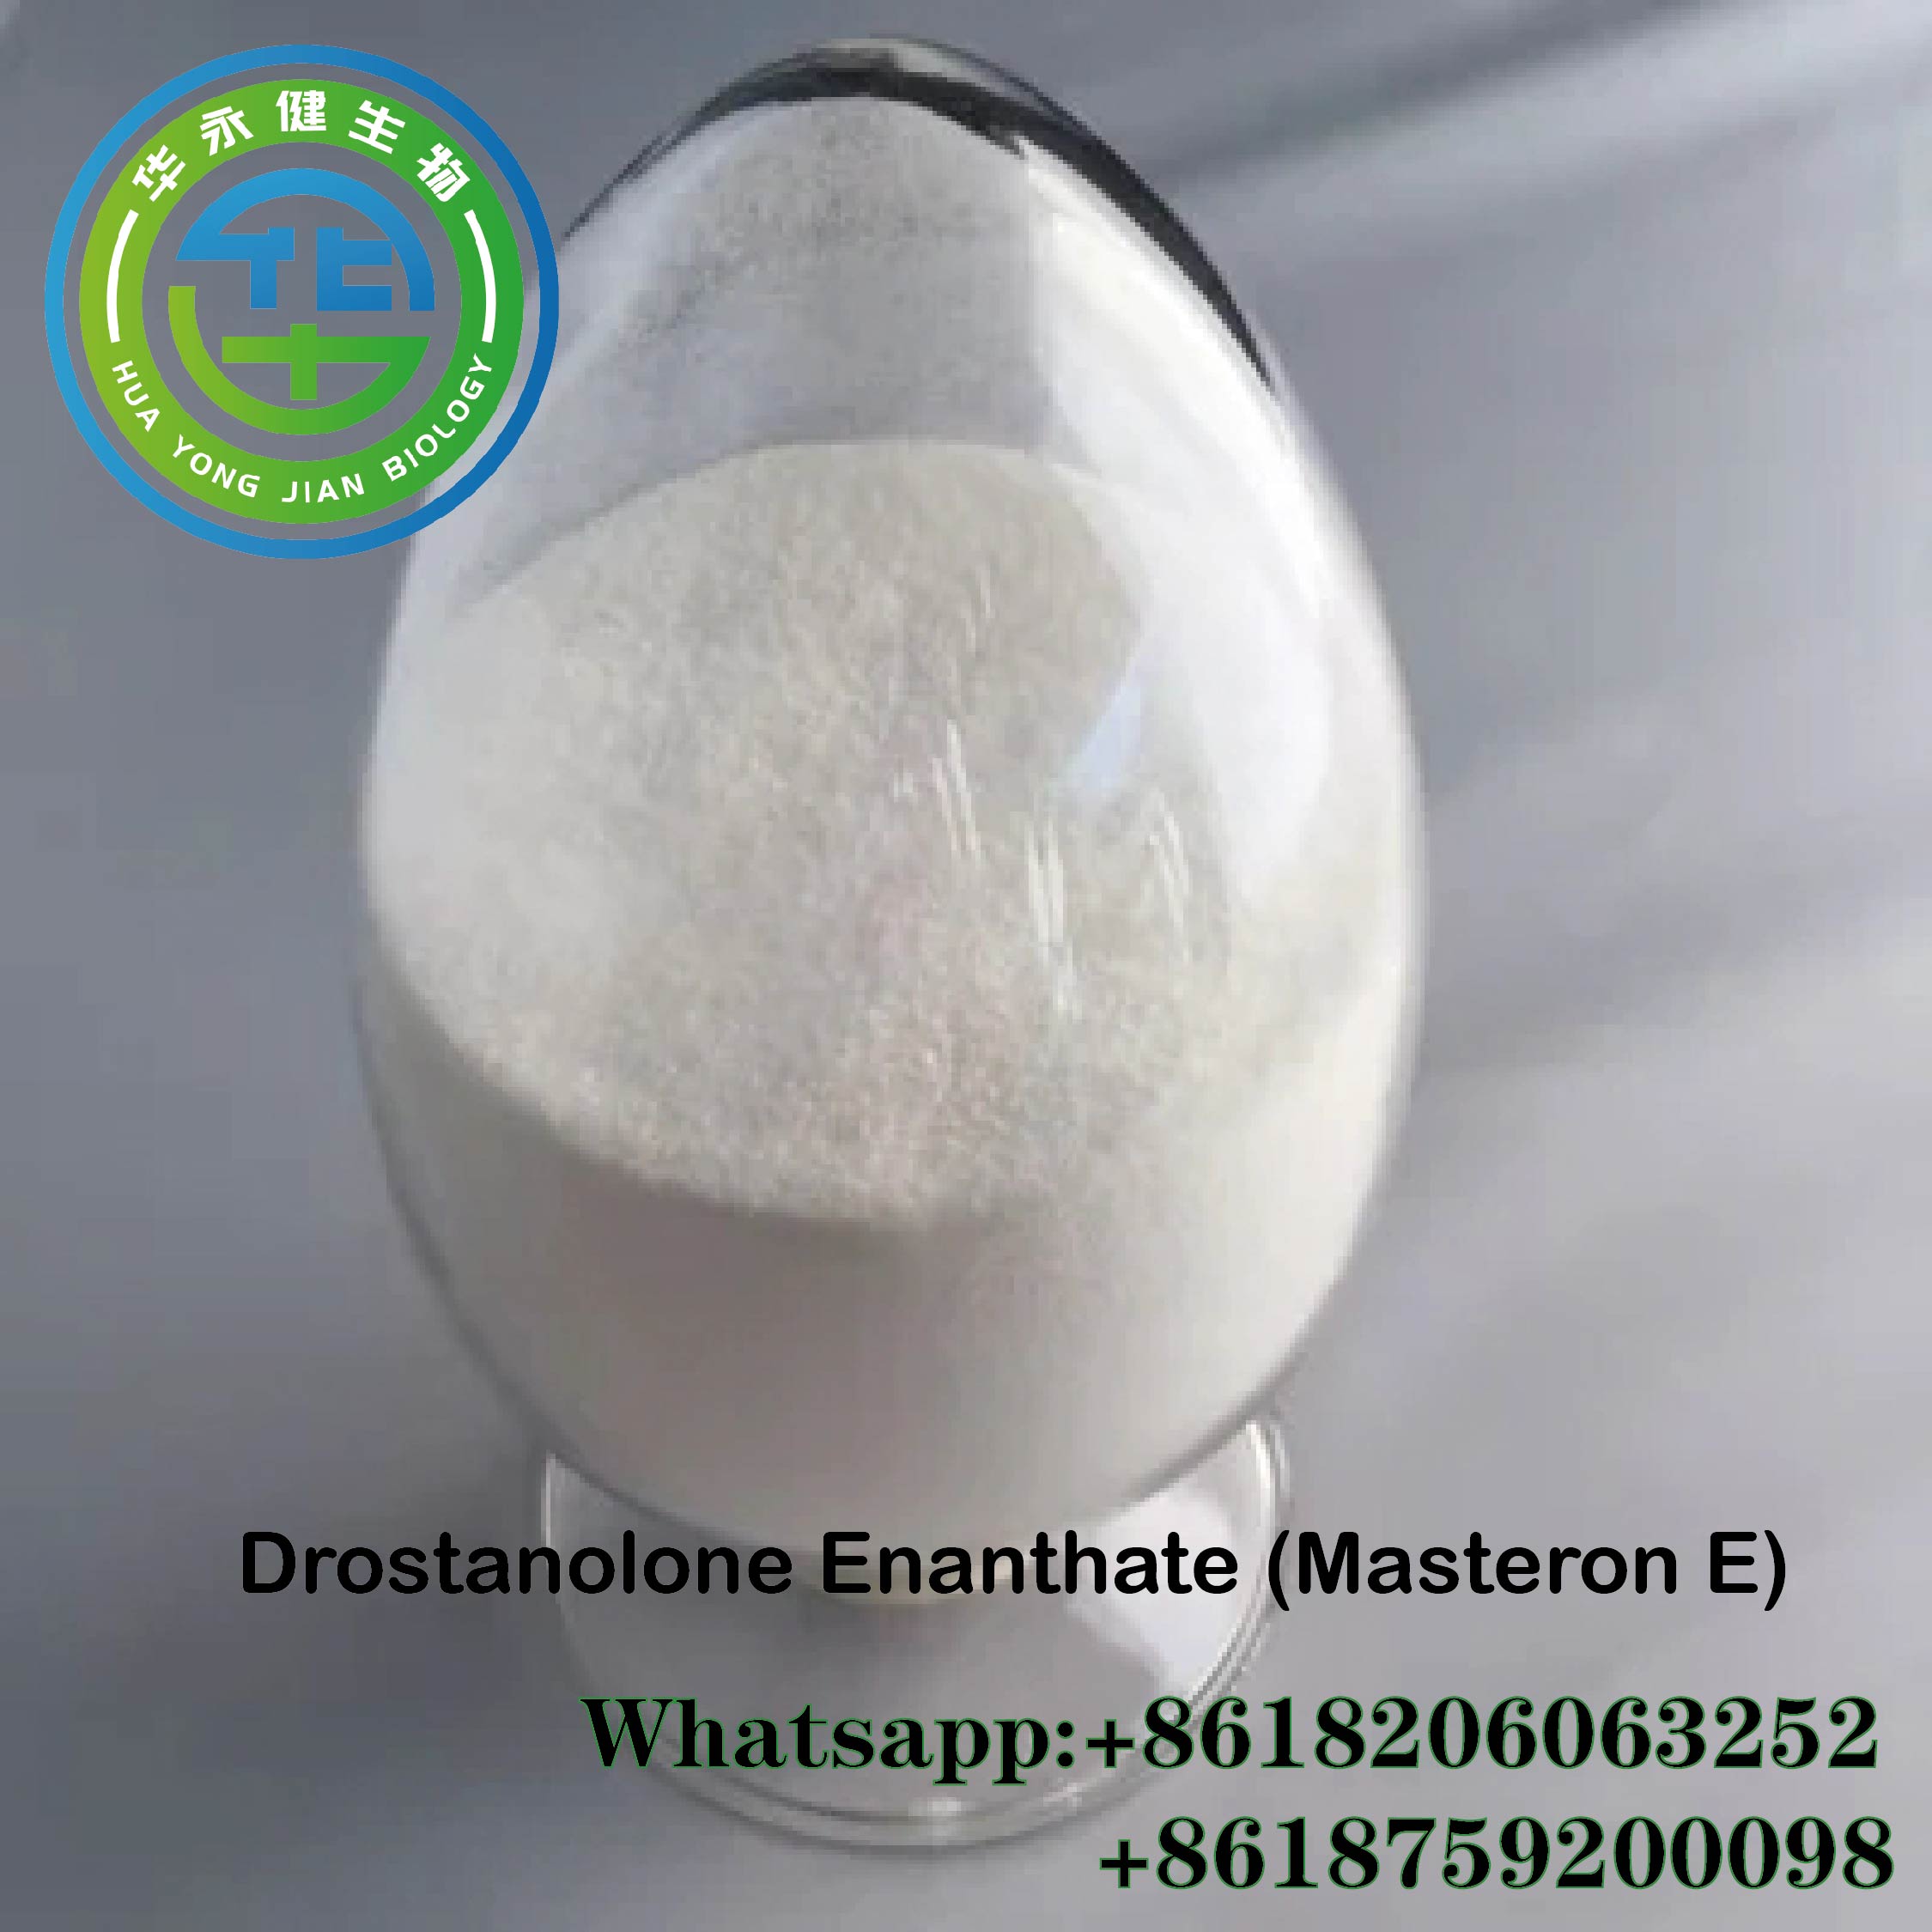 ड्रॉस्टॅनोलोन एनॅन्थेट पावडर डीई लीगल मास्टरॉन ई स्टिरॉइड फॉर मसल गेंस CasNO.303-42-4 वैशिष्ट्यीकृत प्रतिमा